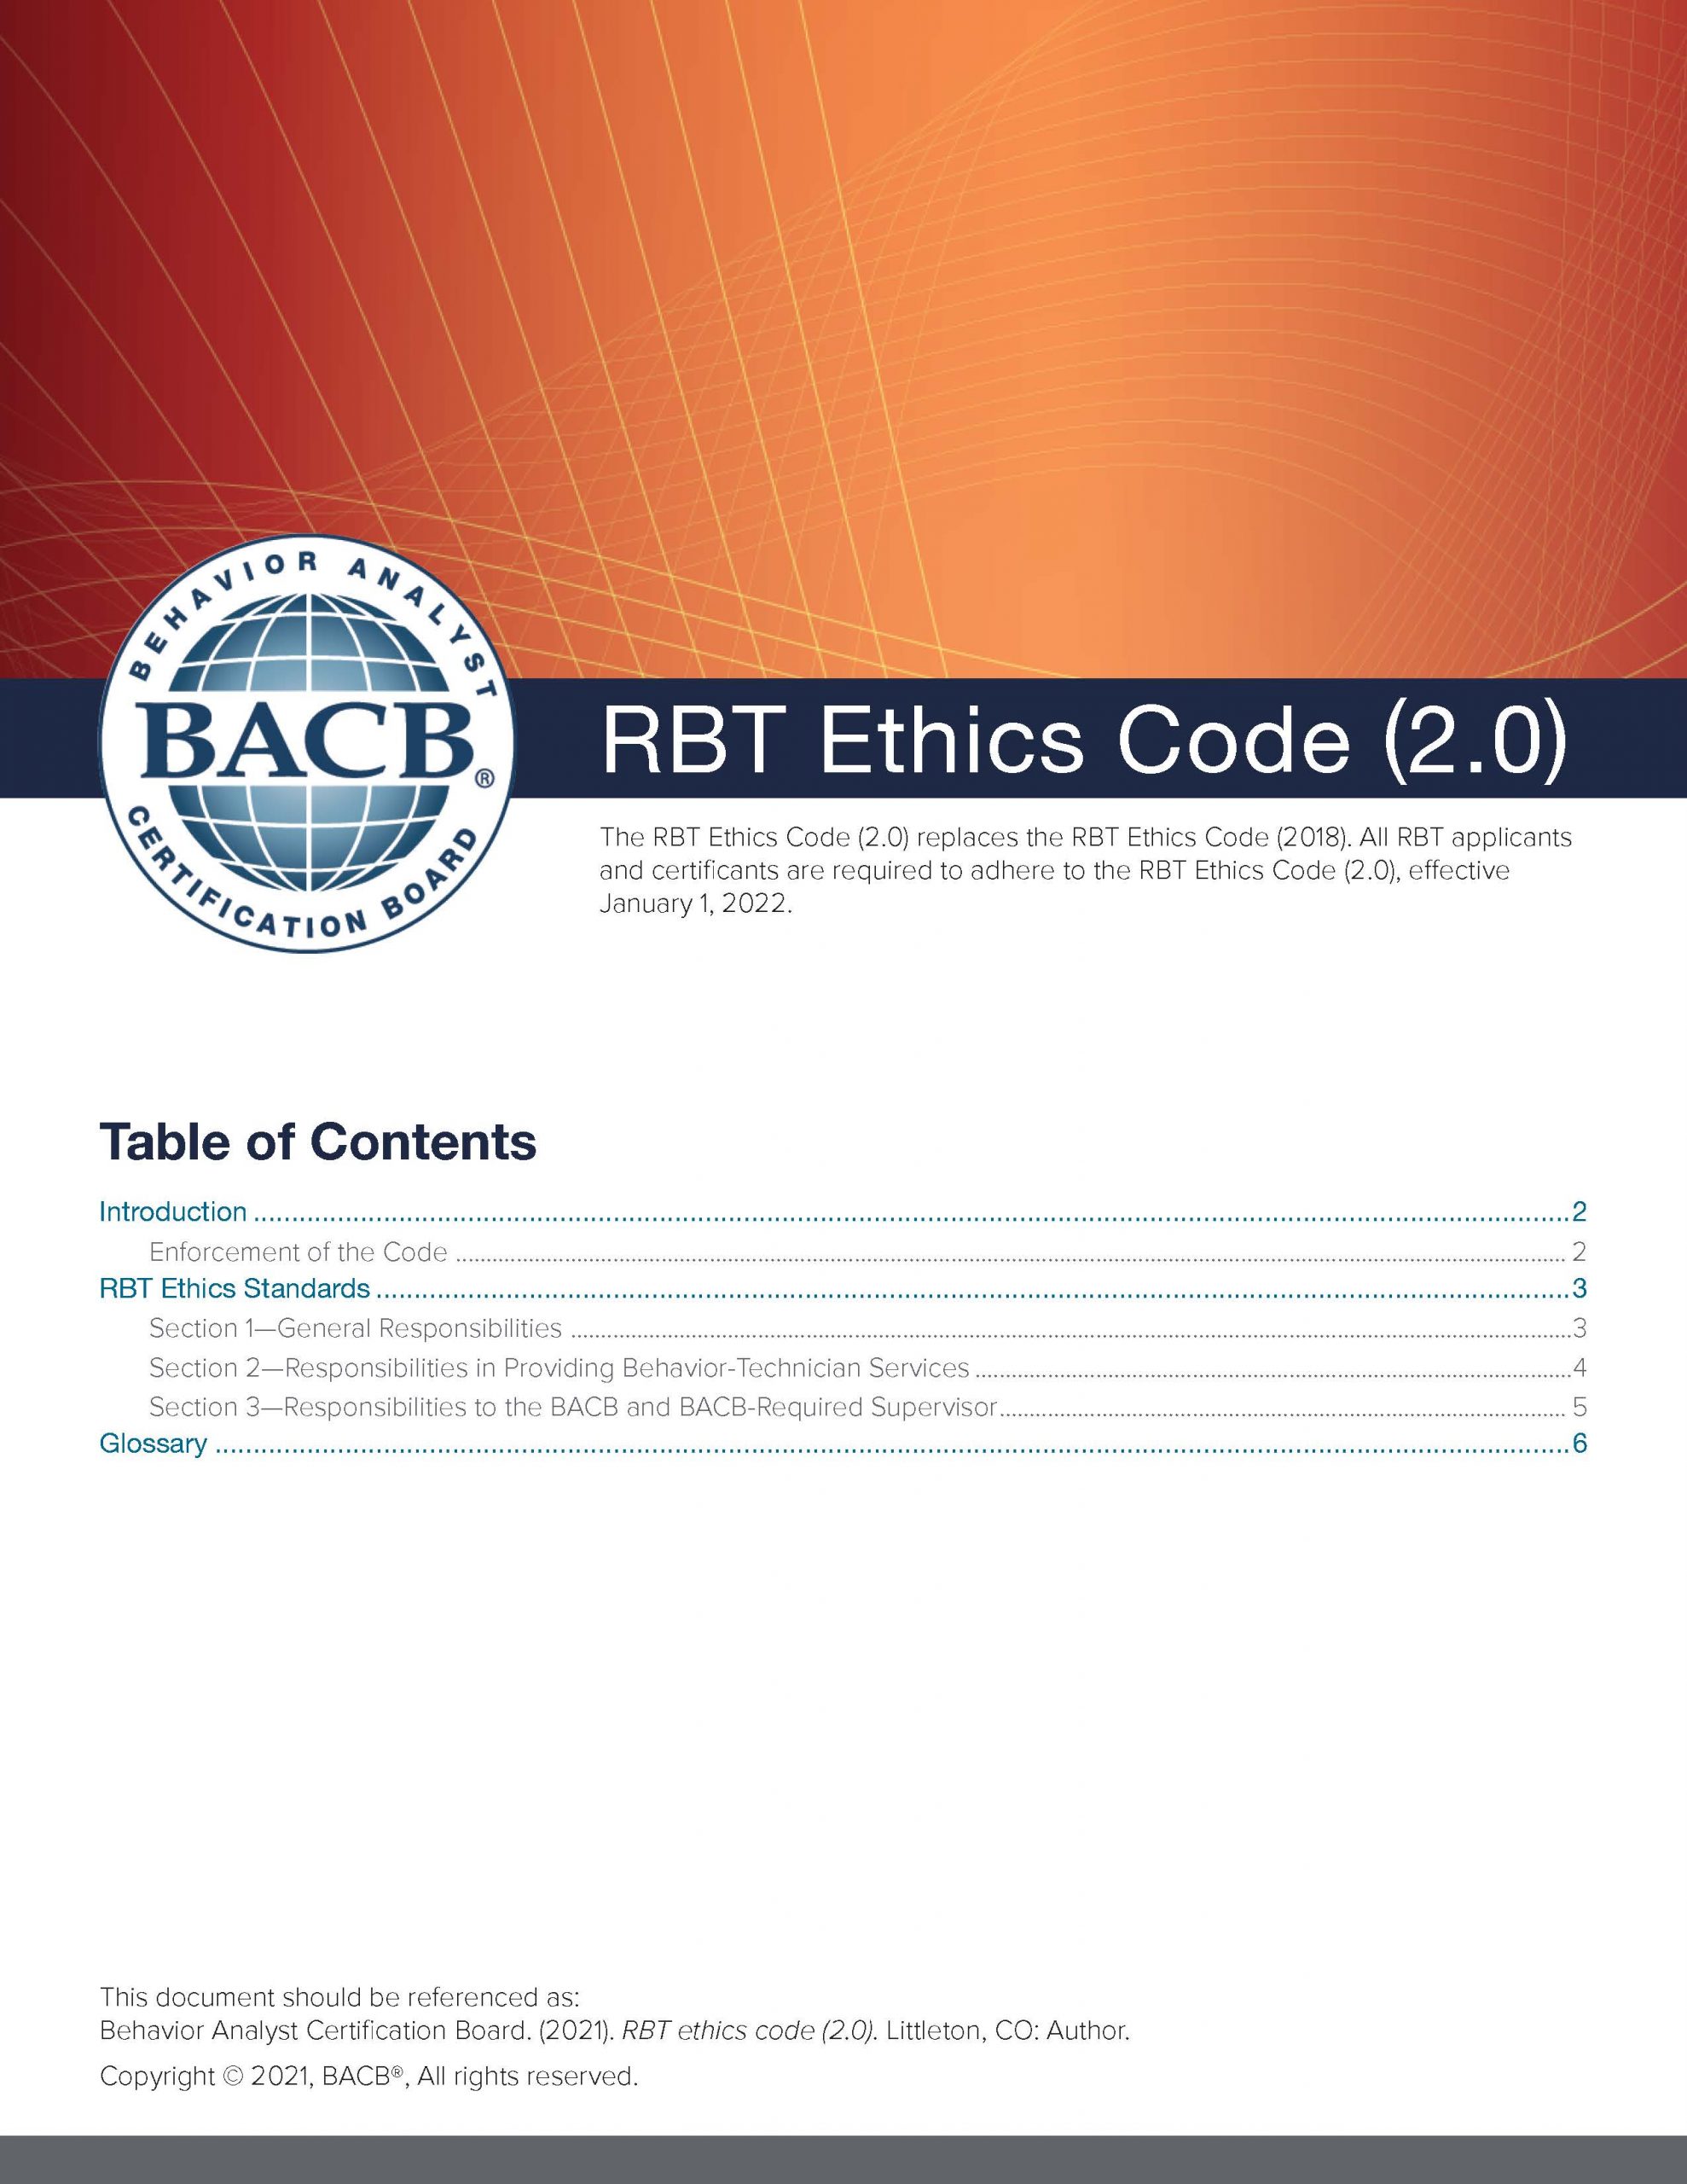 RBT Ethics Code 2.0